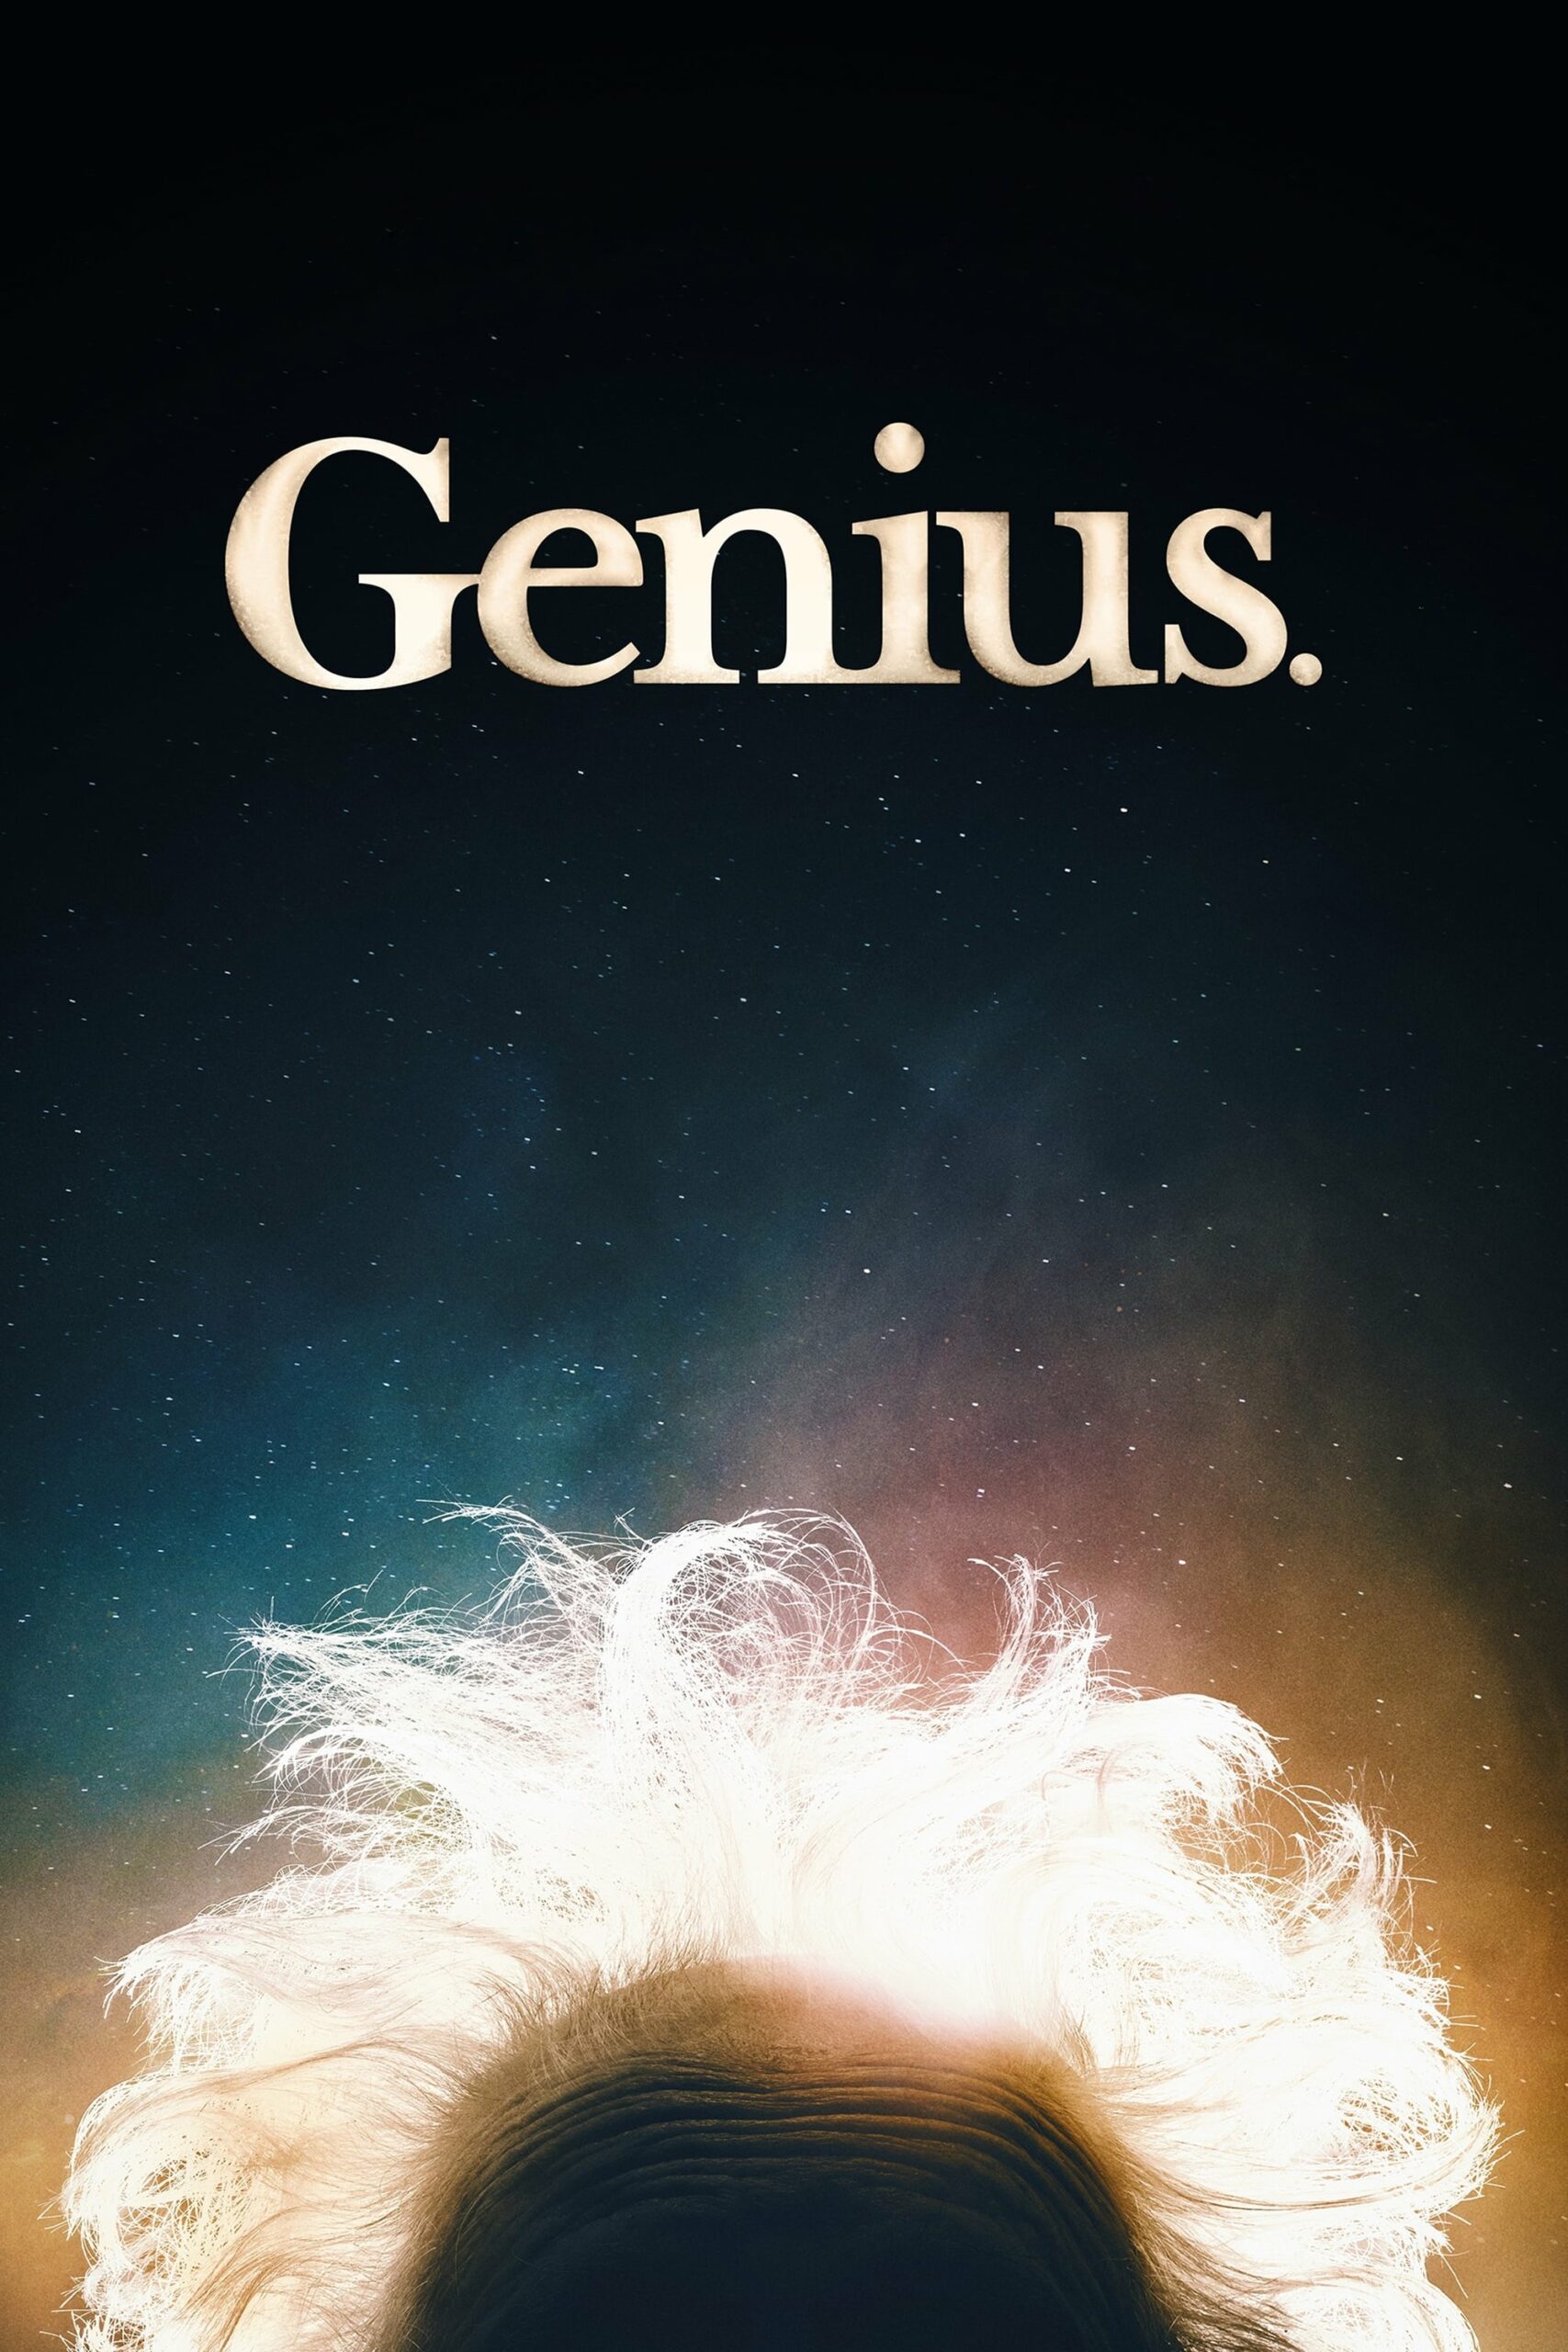 Plakát pro film “Génius”